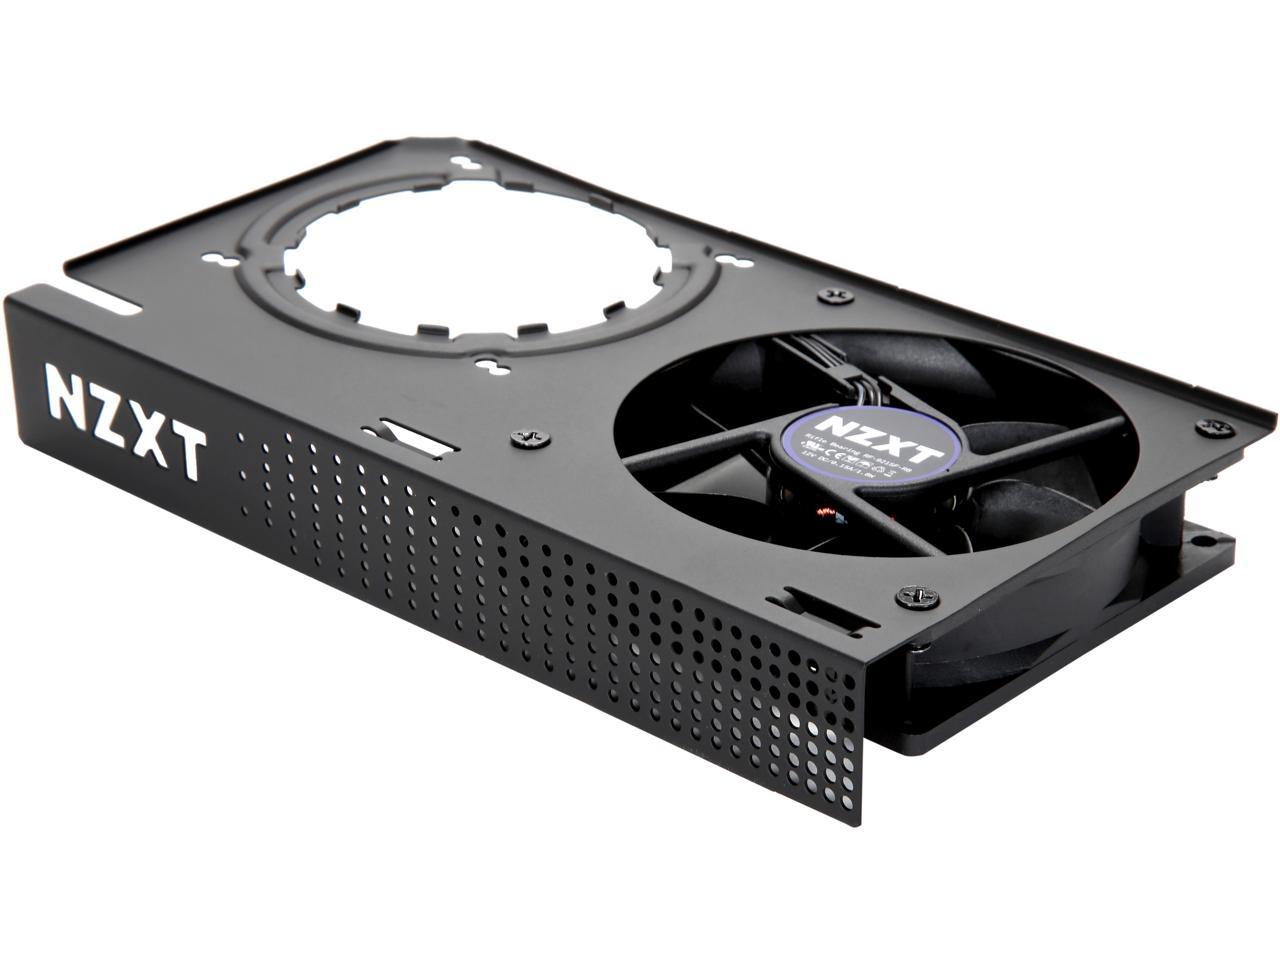 Noir Compatibilité GPU AMD et NVIDIA Kraken G12 Kit de Montage GPU pour Kraken X Series AIO Refroidissement GPU amélioré Noir NZXT Kraken G12